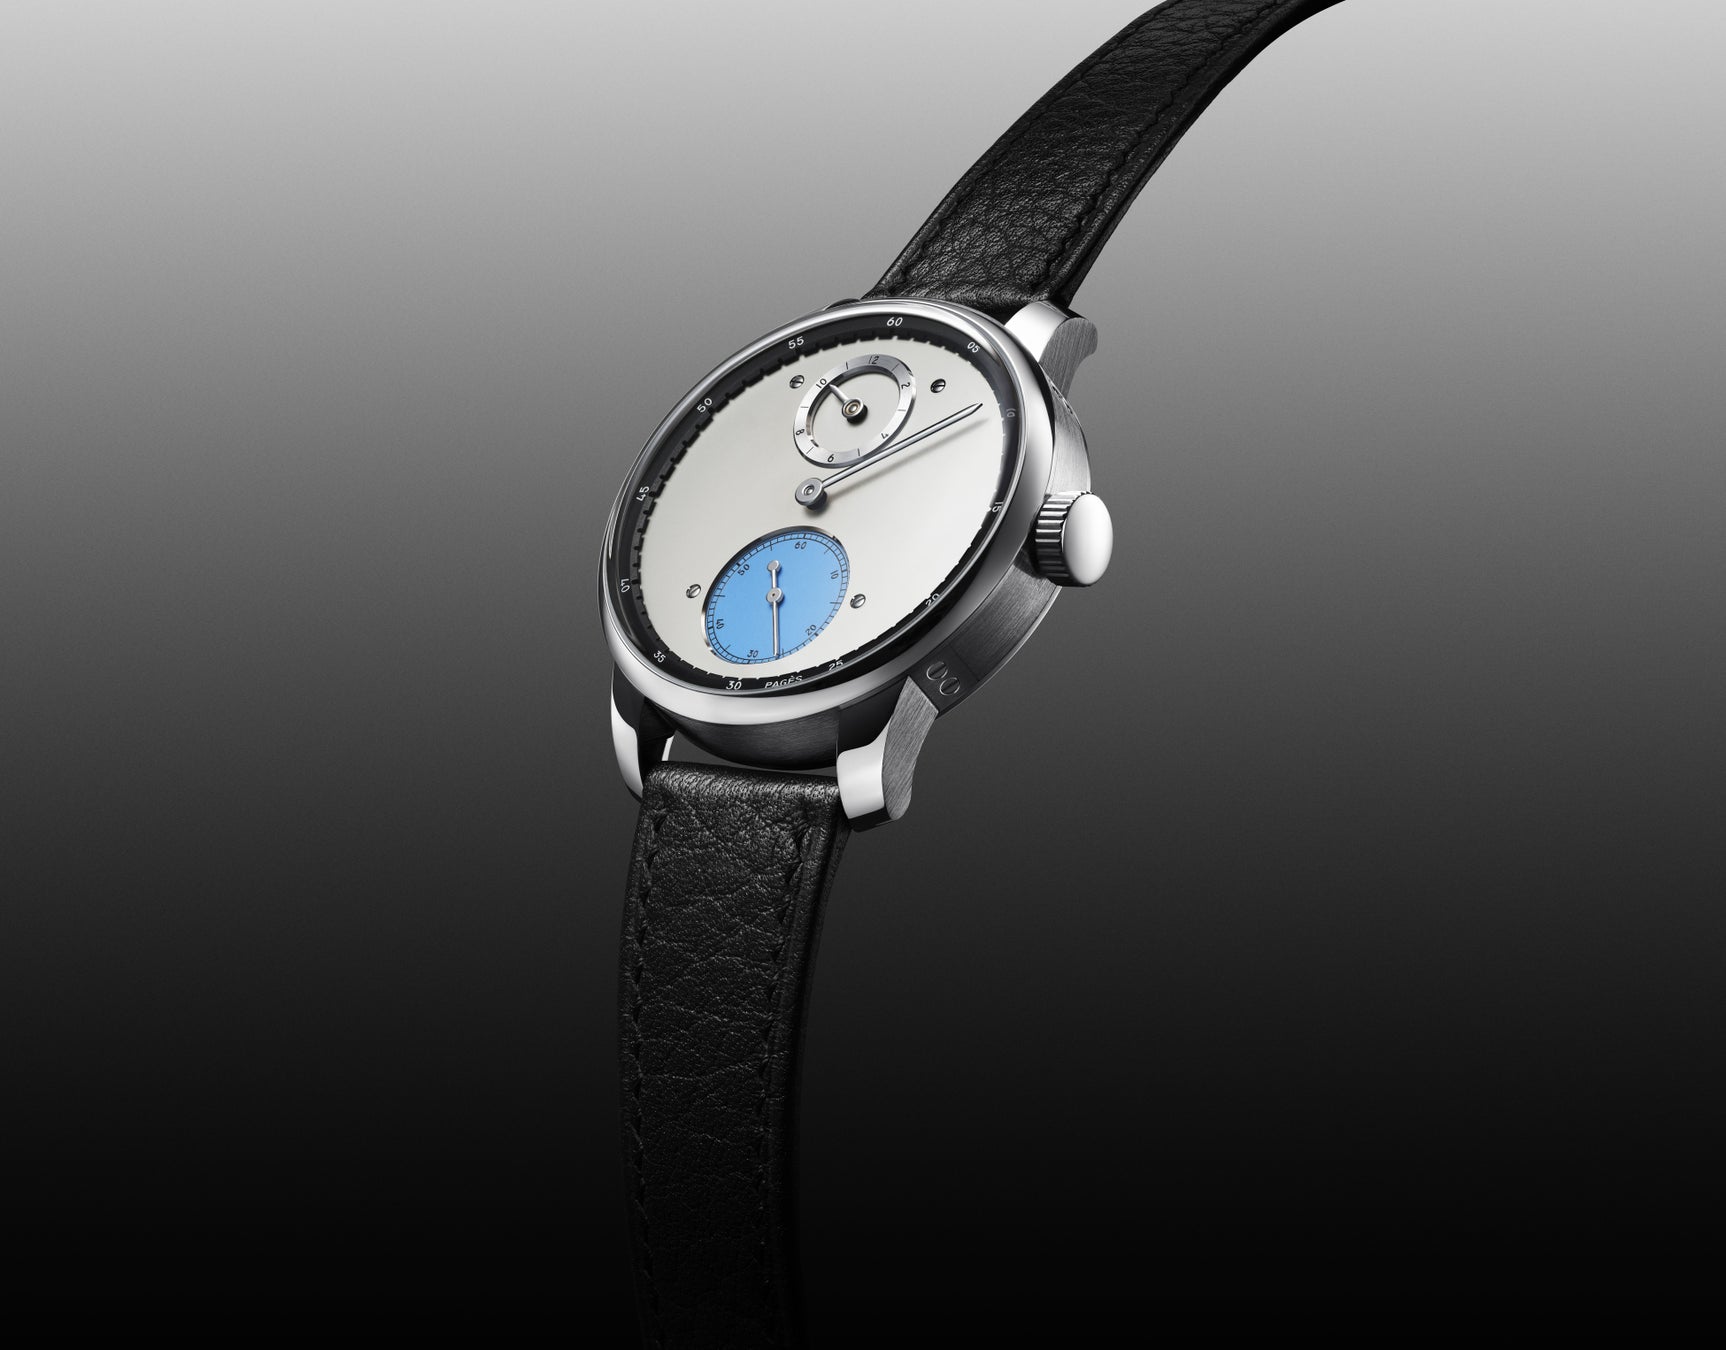 【ルイ·ヴィトン】Louis Vuitton Watch Prize for Independent Creatives第1回最優秀賞 受賞者 ラウル·パジェス